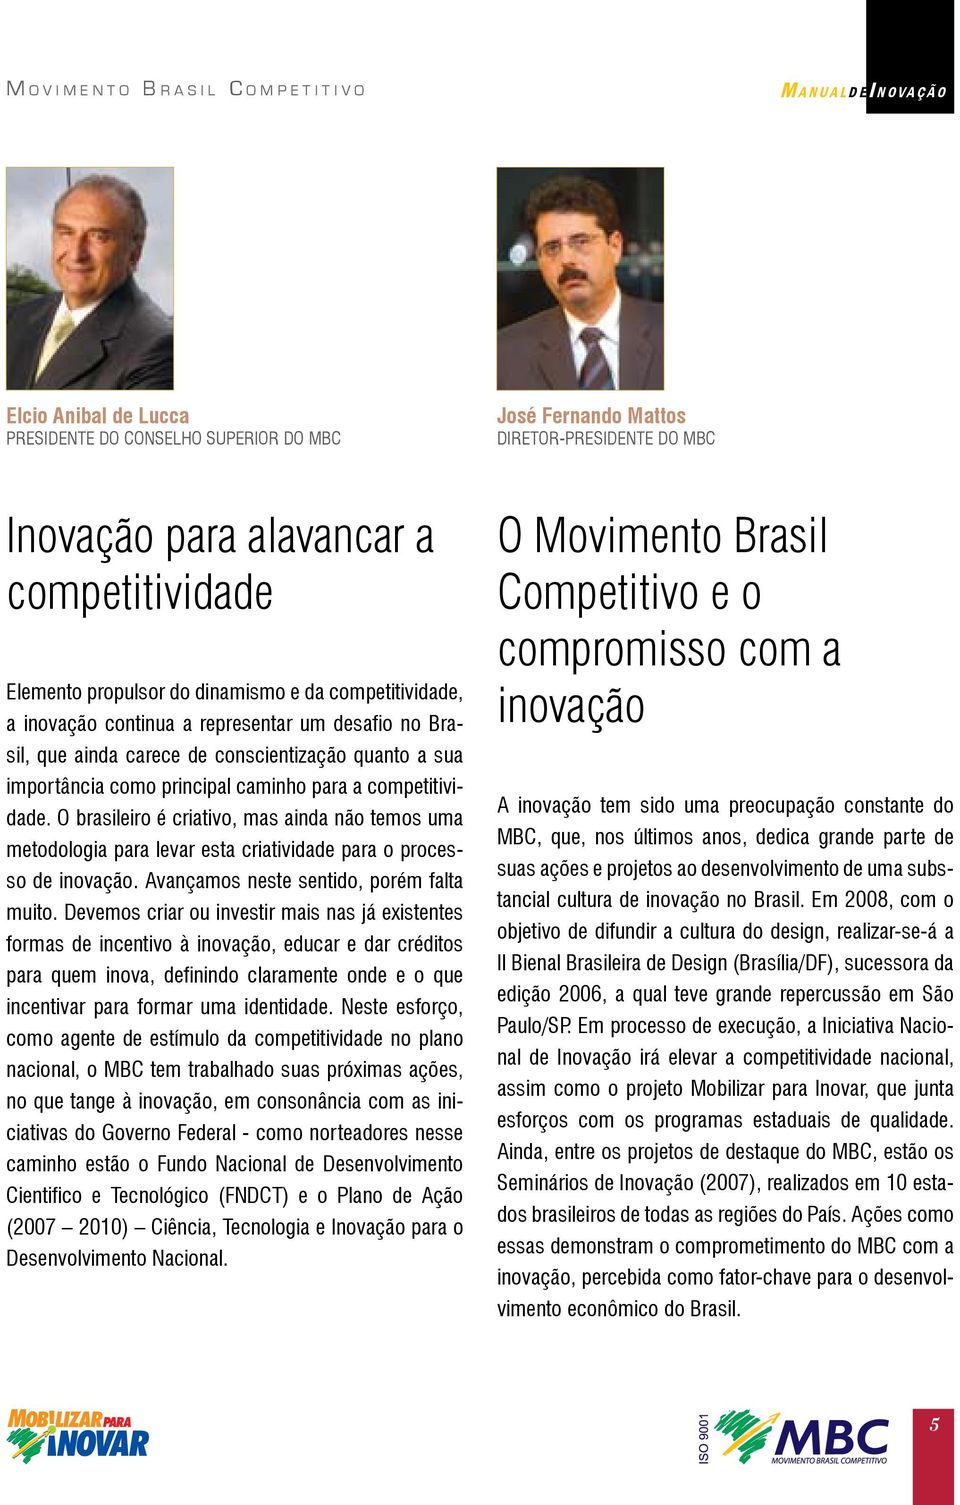 O brasileiro é criativo, mas ainda não temos uma metodologia para levar esta criatividade para o processo de inovação. Avançamos neste sentido, porém falta muito.